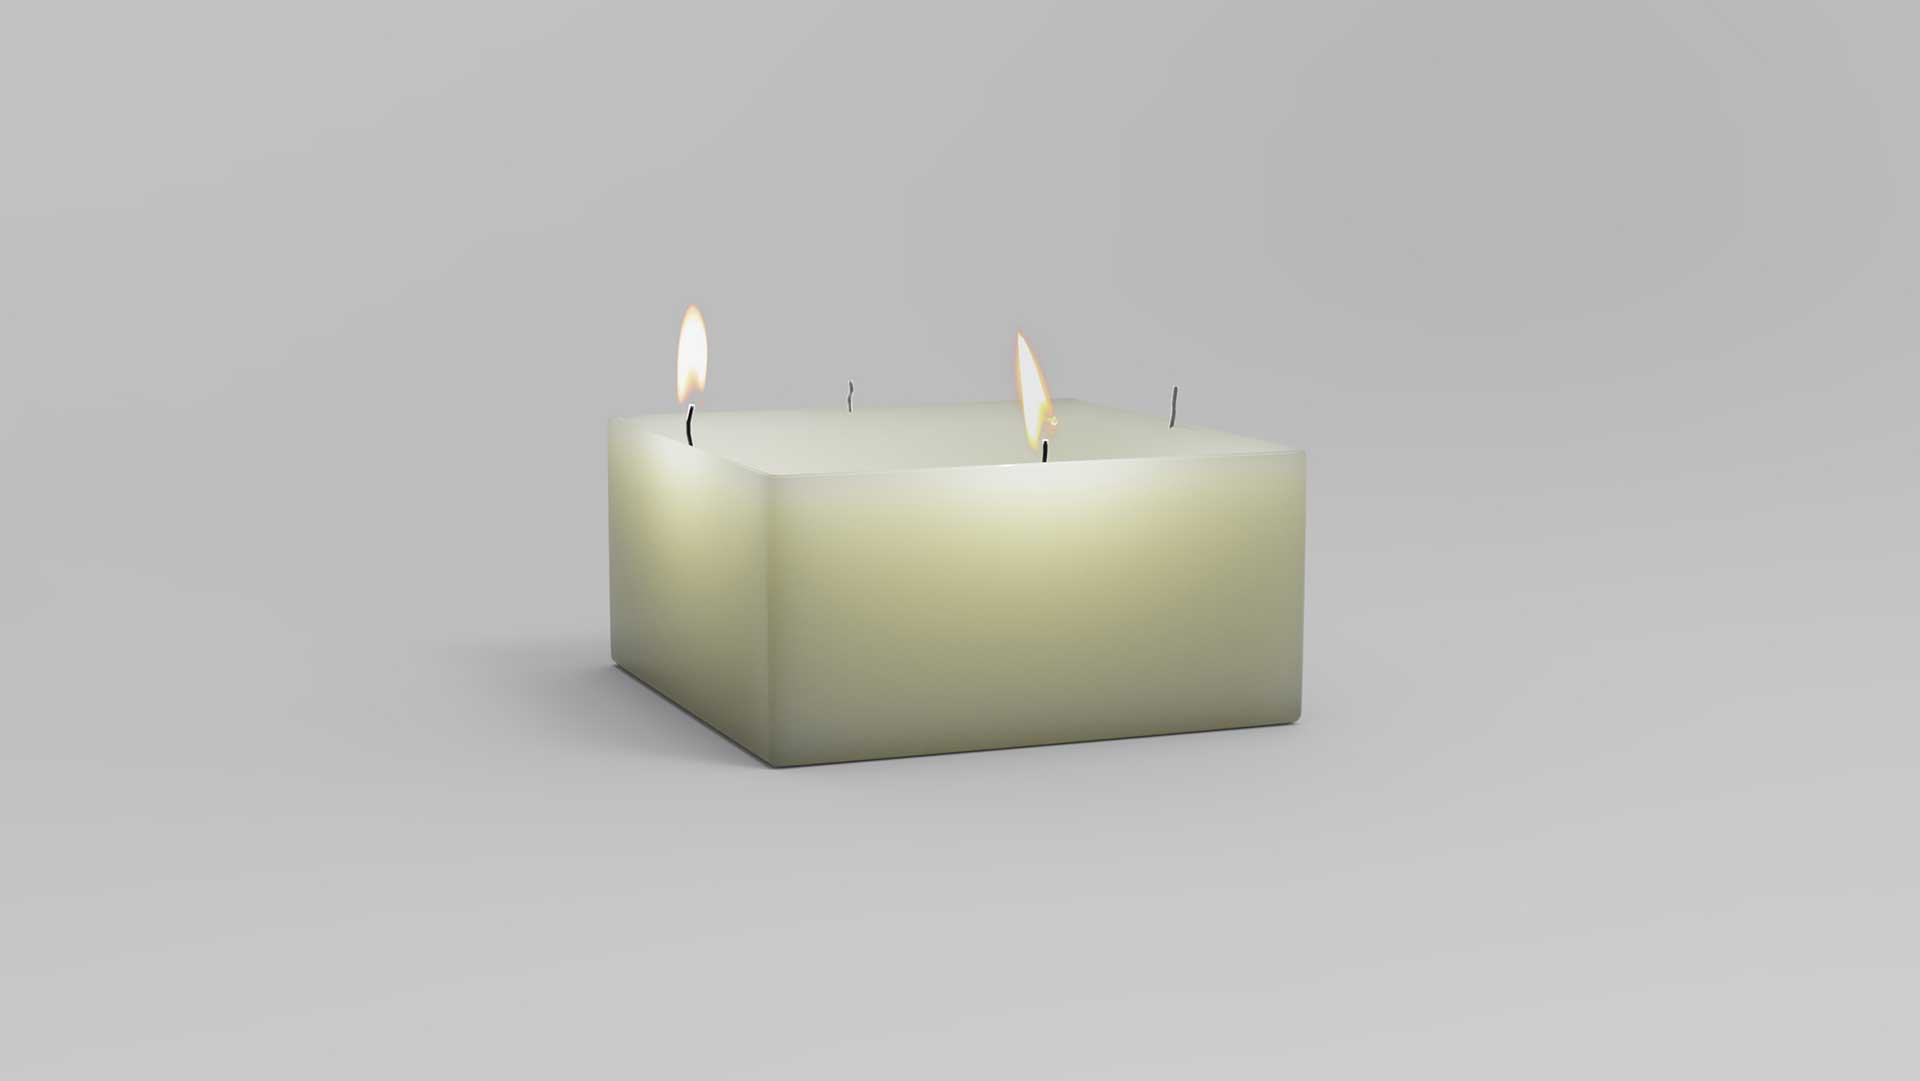 свеча на 4 огонька, свечкир, ikamildesign 2020